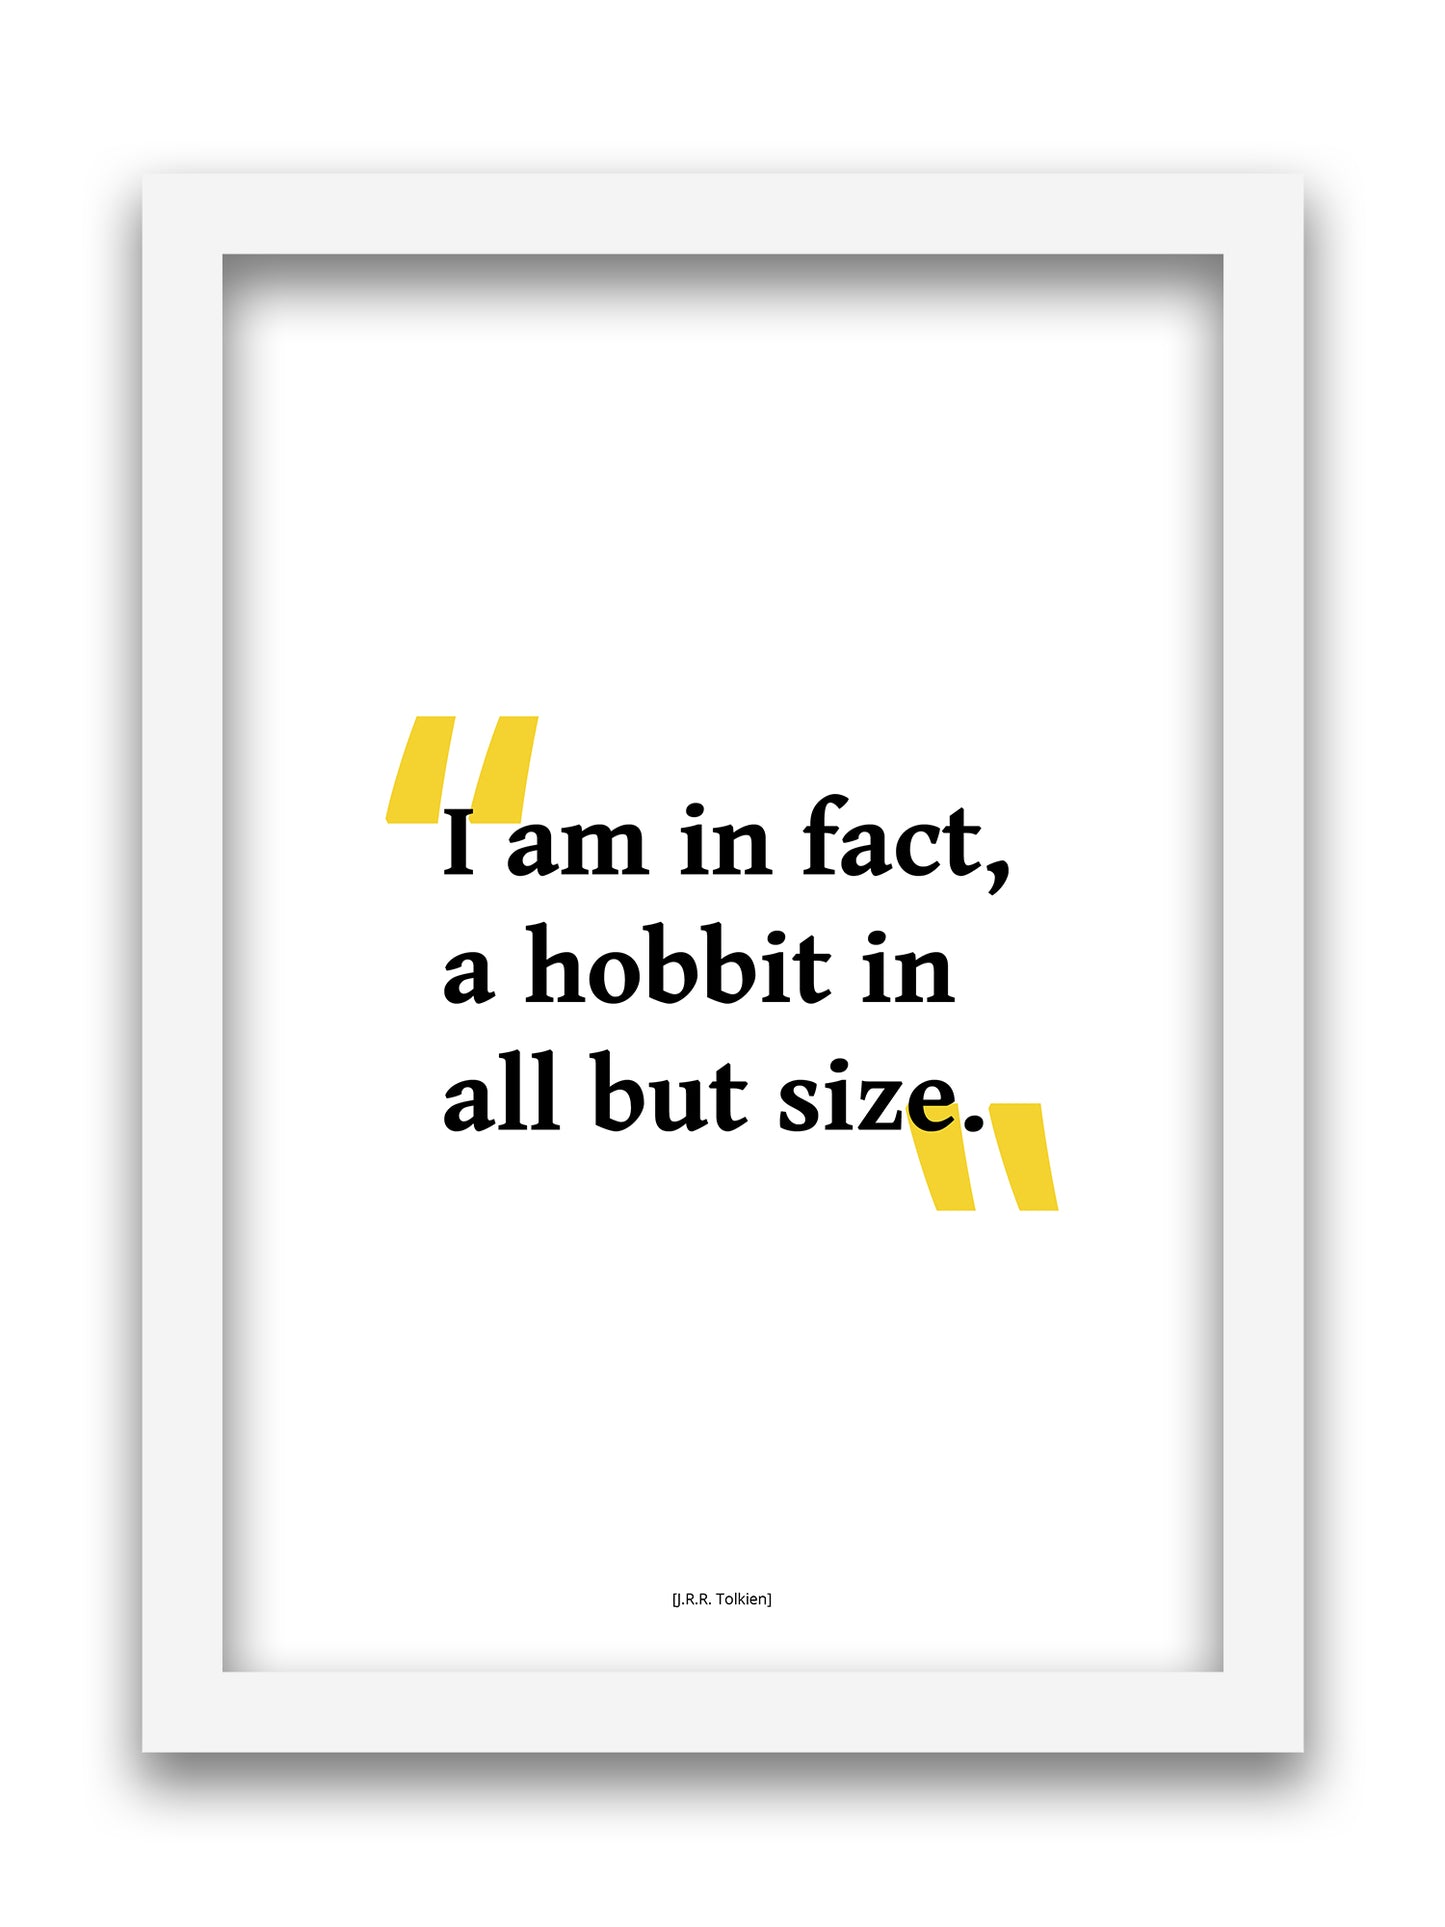 J.R.R Tolkien - Hobbit Size